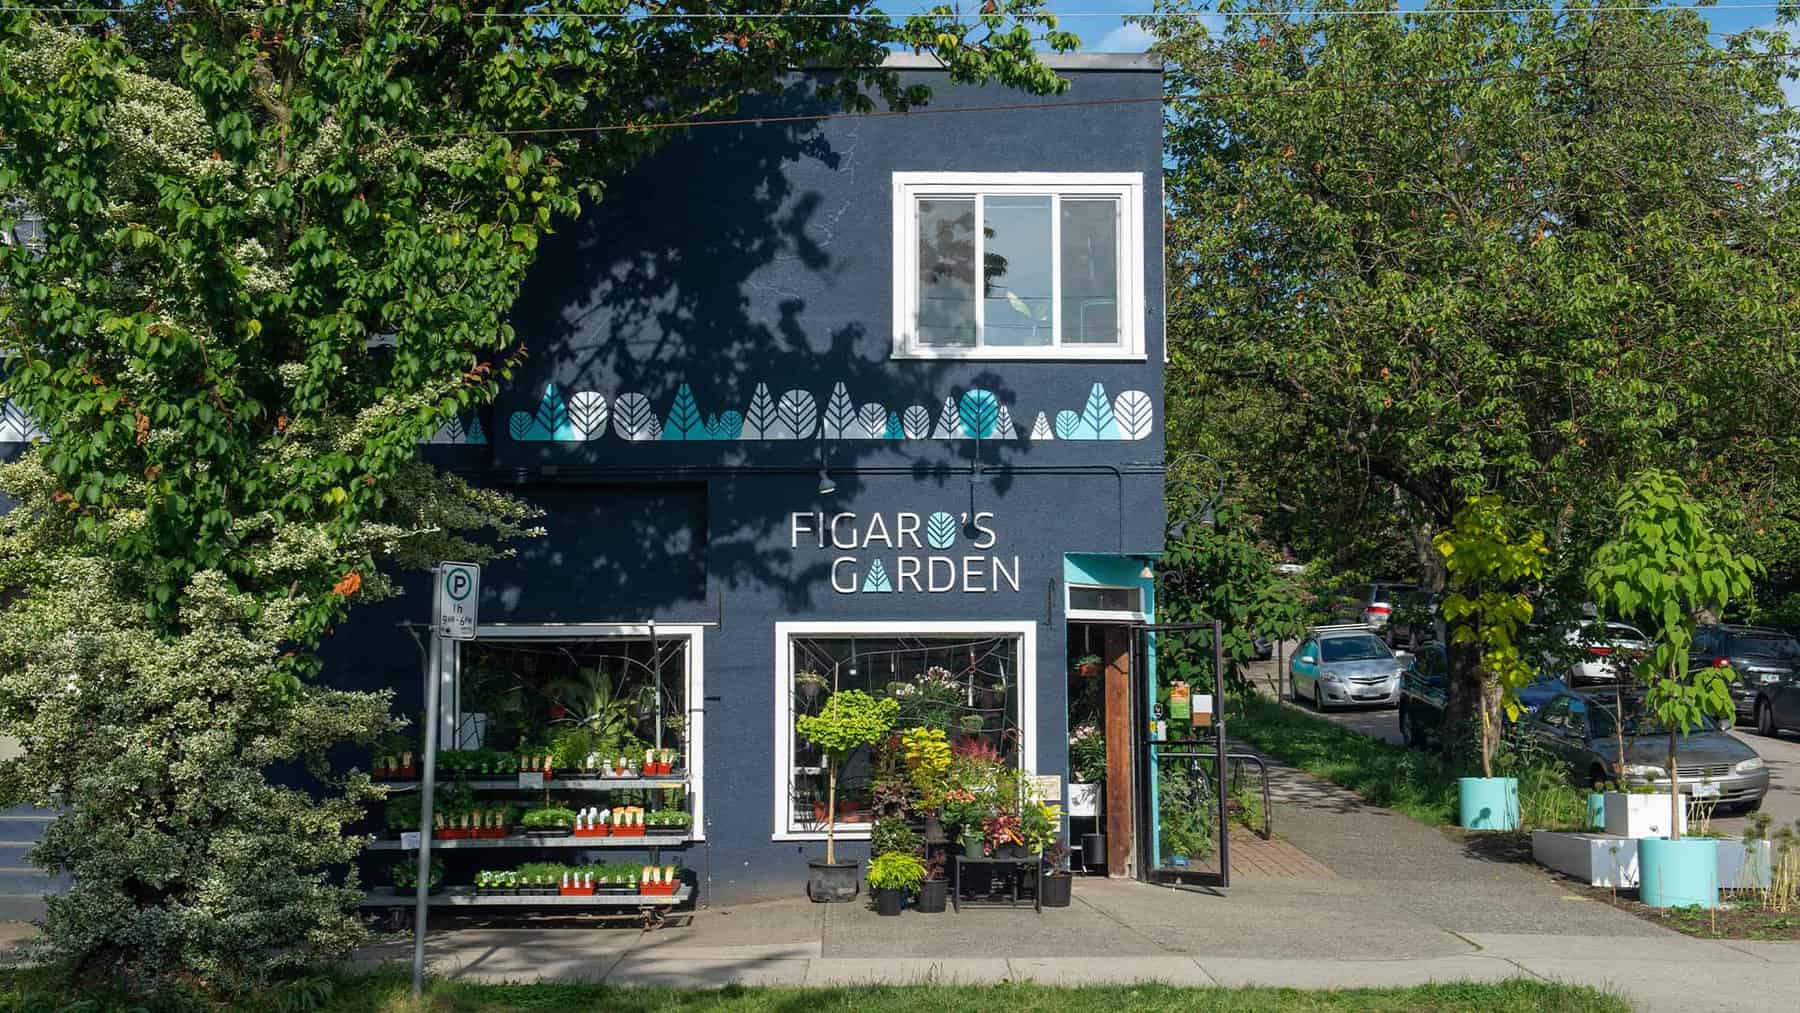 East Vancouver Plant Shop Garden Supplies Design Figaro S Garden